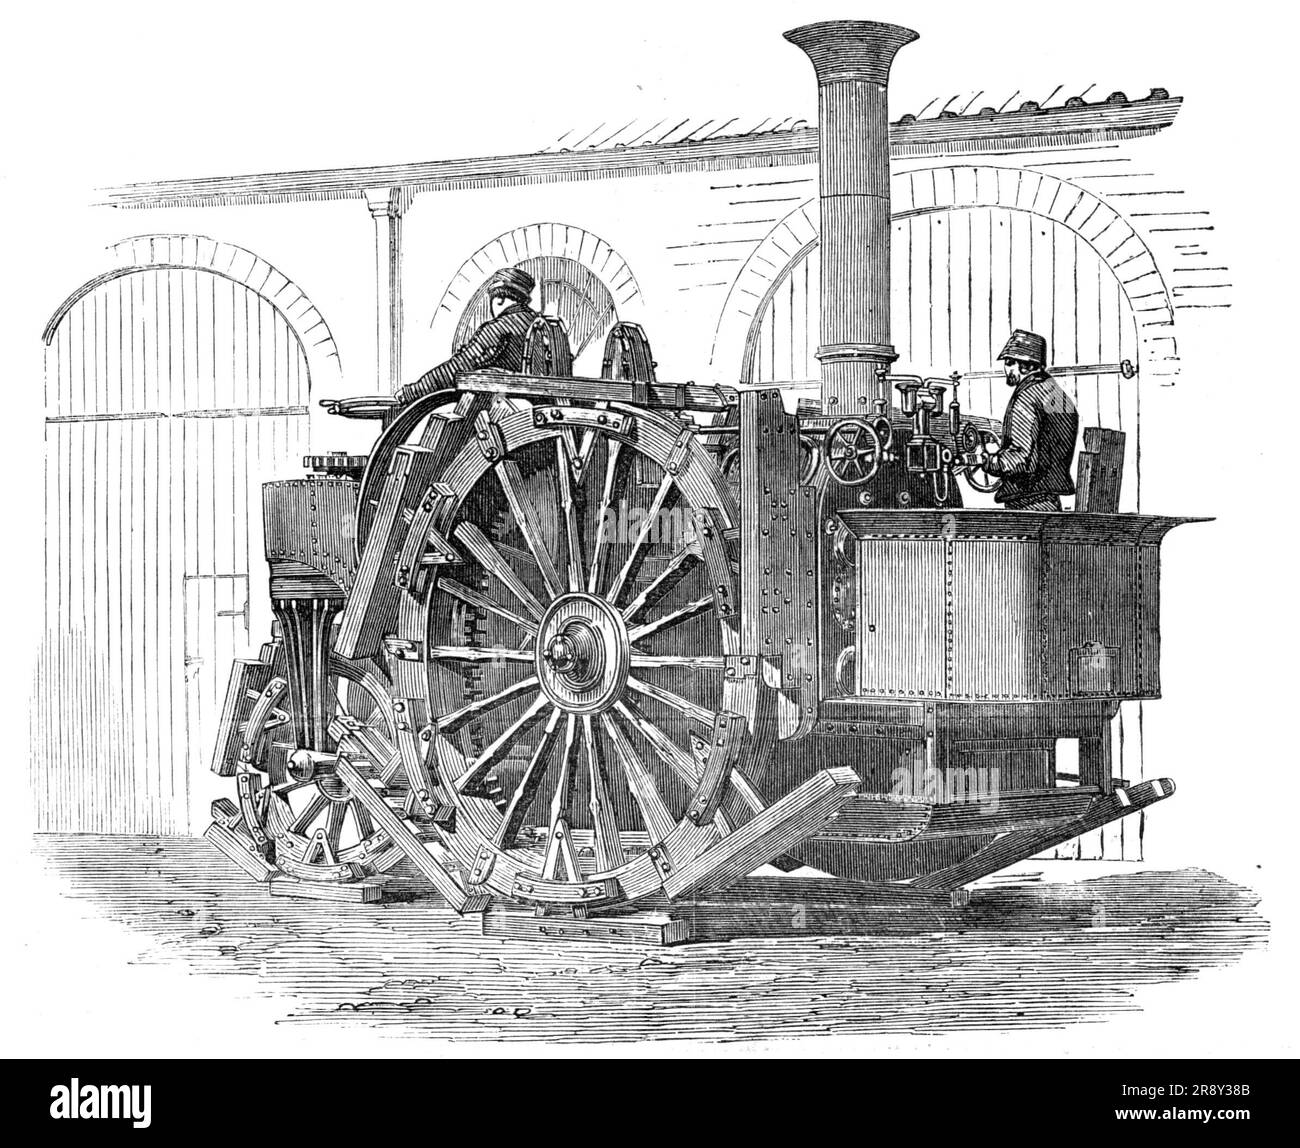 Messrs. Tuxford's Traction-Engine, esposto allo Smithfield Club Cattle Show, [Londra], 1857. "...il motore di trazione, o cavallo a vapore [è] una sorta di leviatano che cammina, più potente dell'elefante, ma gestibile come il cavallo da carretto migliore del contadino. Alcune di queste macchine a movimento automatico sono in fase di costruzione, o sono già state completate, per alcune grandi piantagioni di zucchero nelle Indie occidentali... il merito della sua invenzione appartiene al signor Boydell... questo motore pesa complessivamente circa dodici tonnellate, e di conseguenza è un affare costoso". Da "Illustrated London News", 1857. Foto Stock